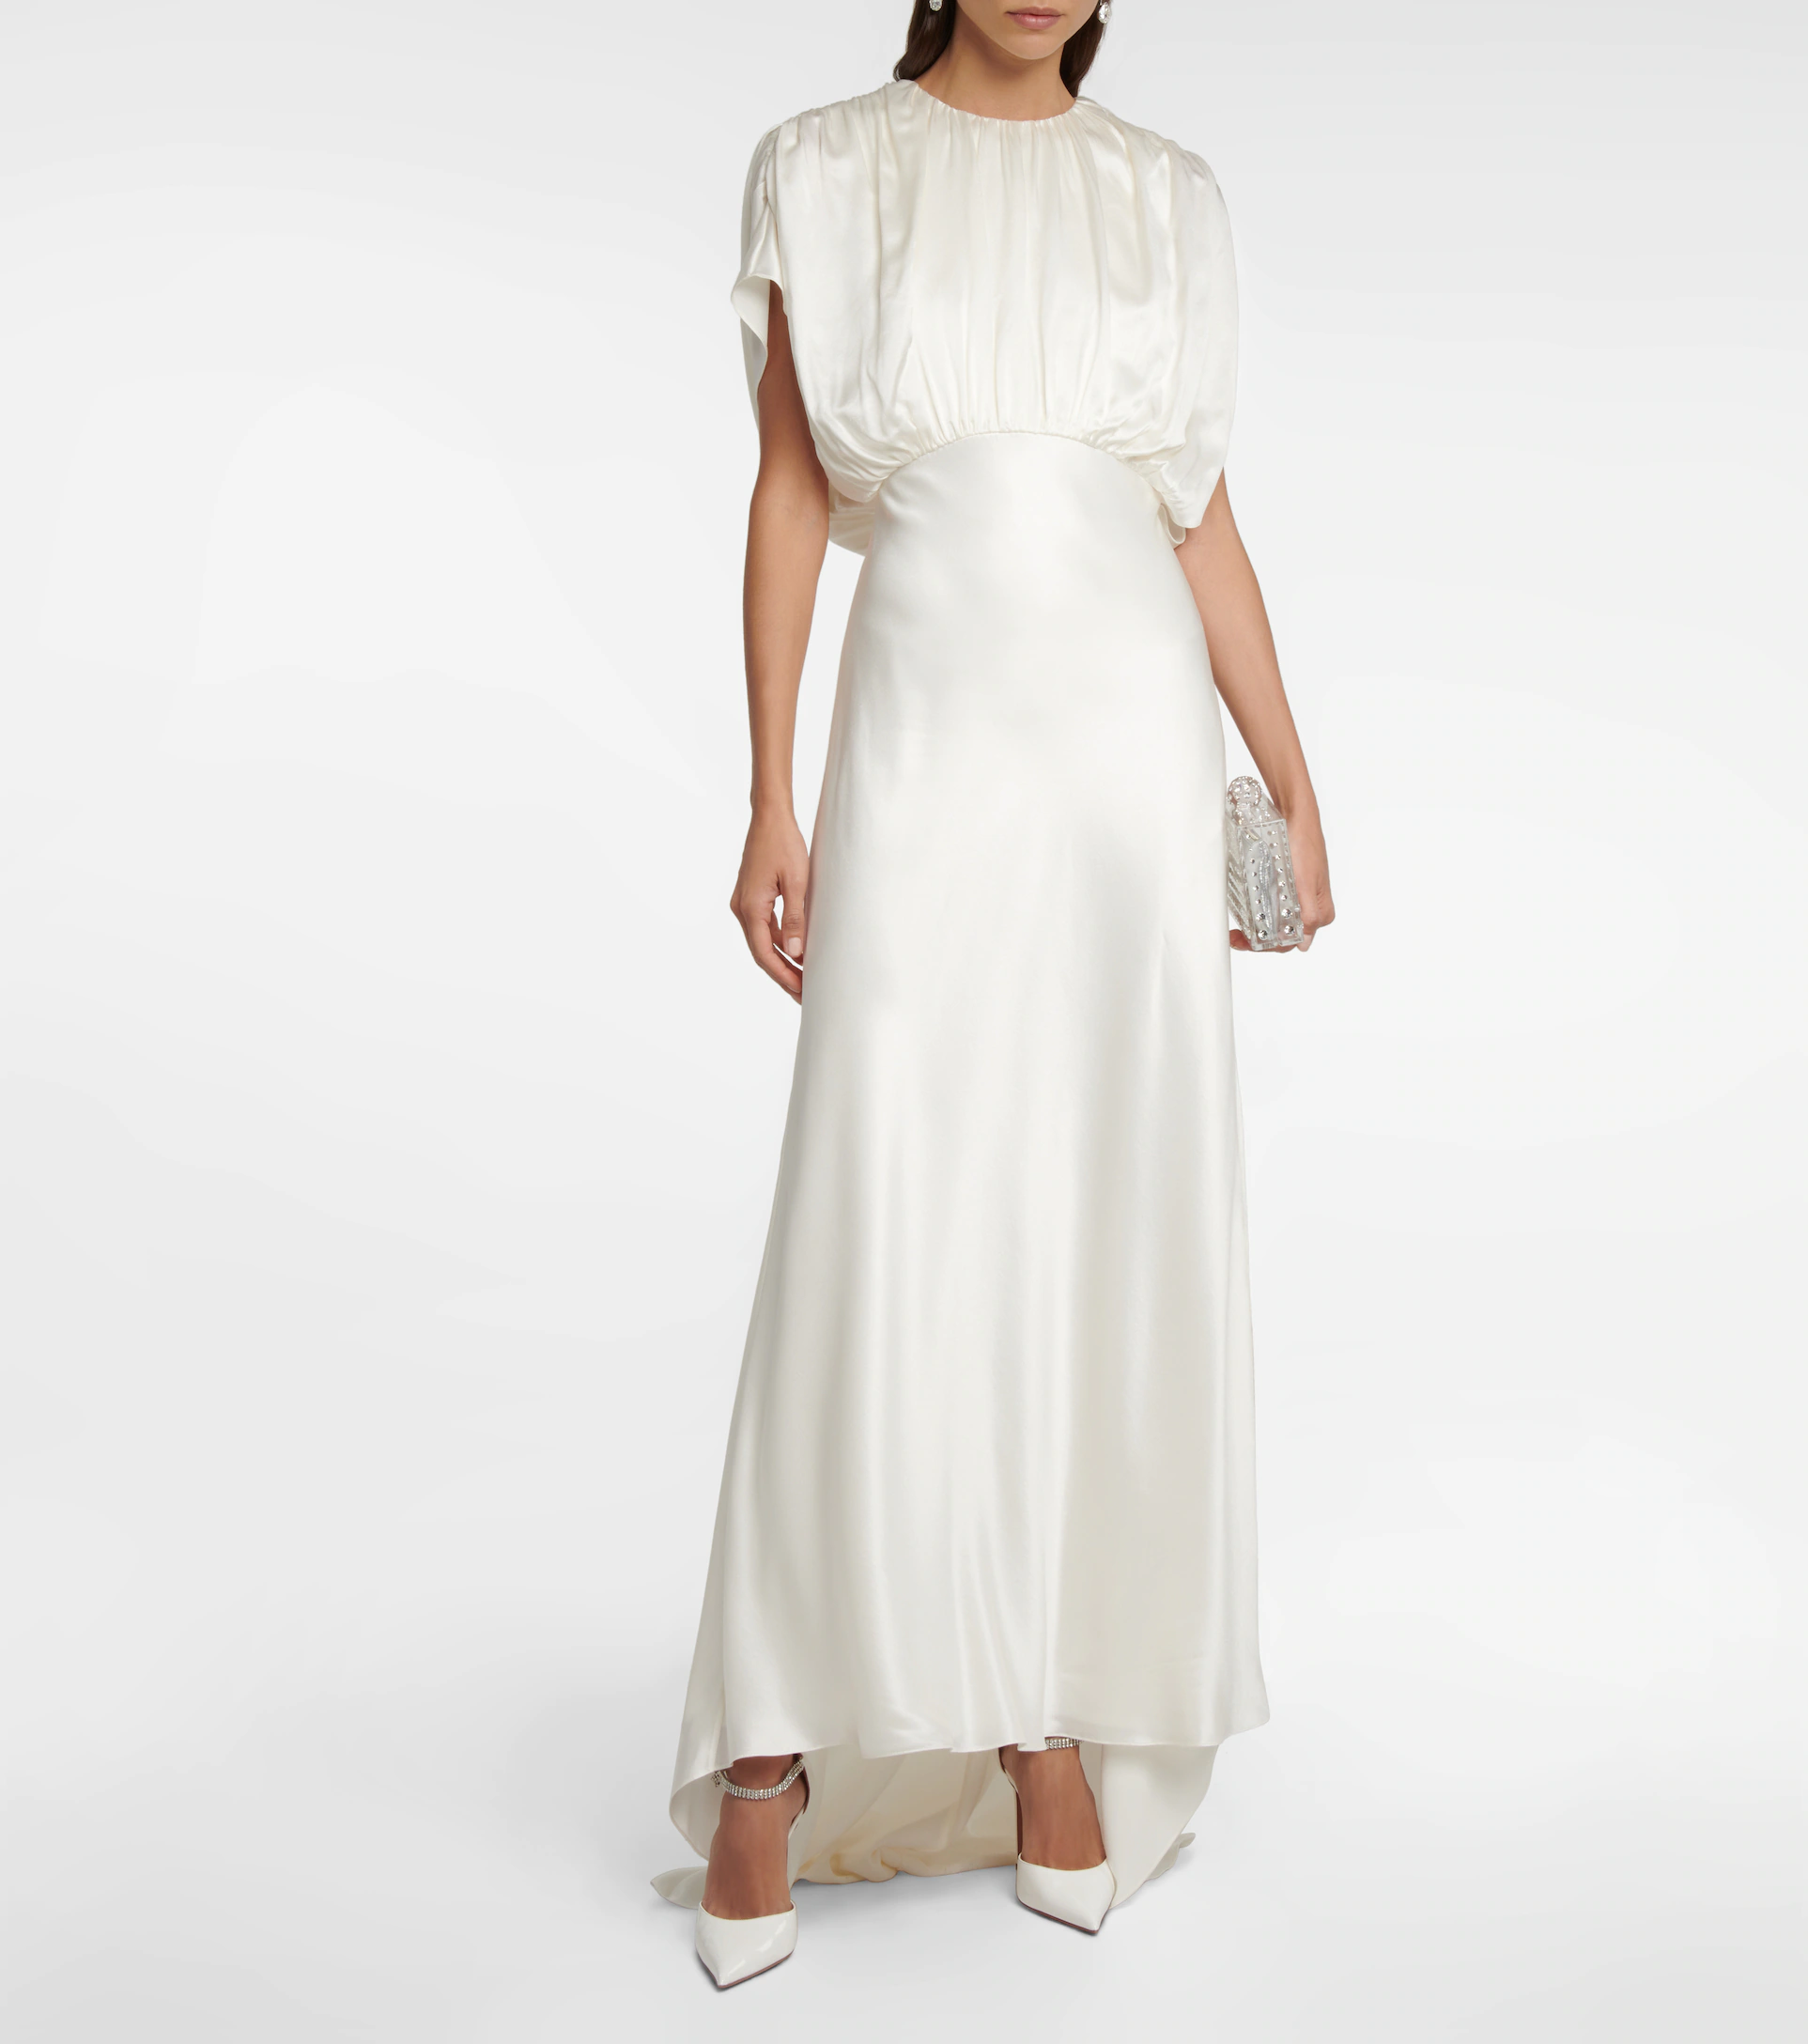 10 robes de mariée modernes à acheter en ligne - Blog Mariage Madame C